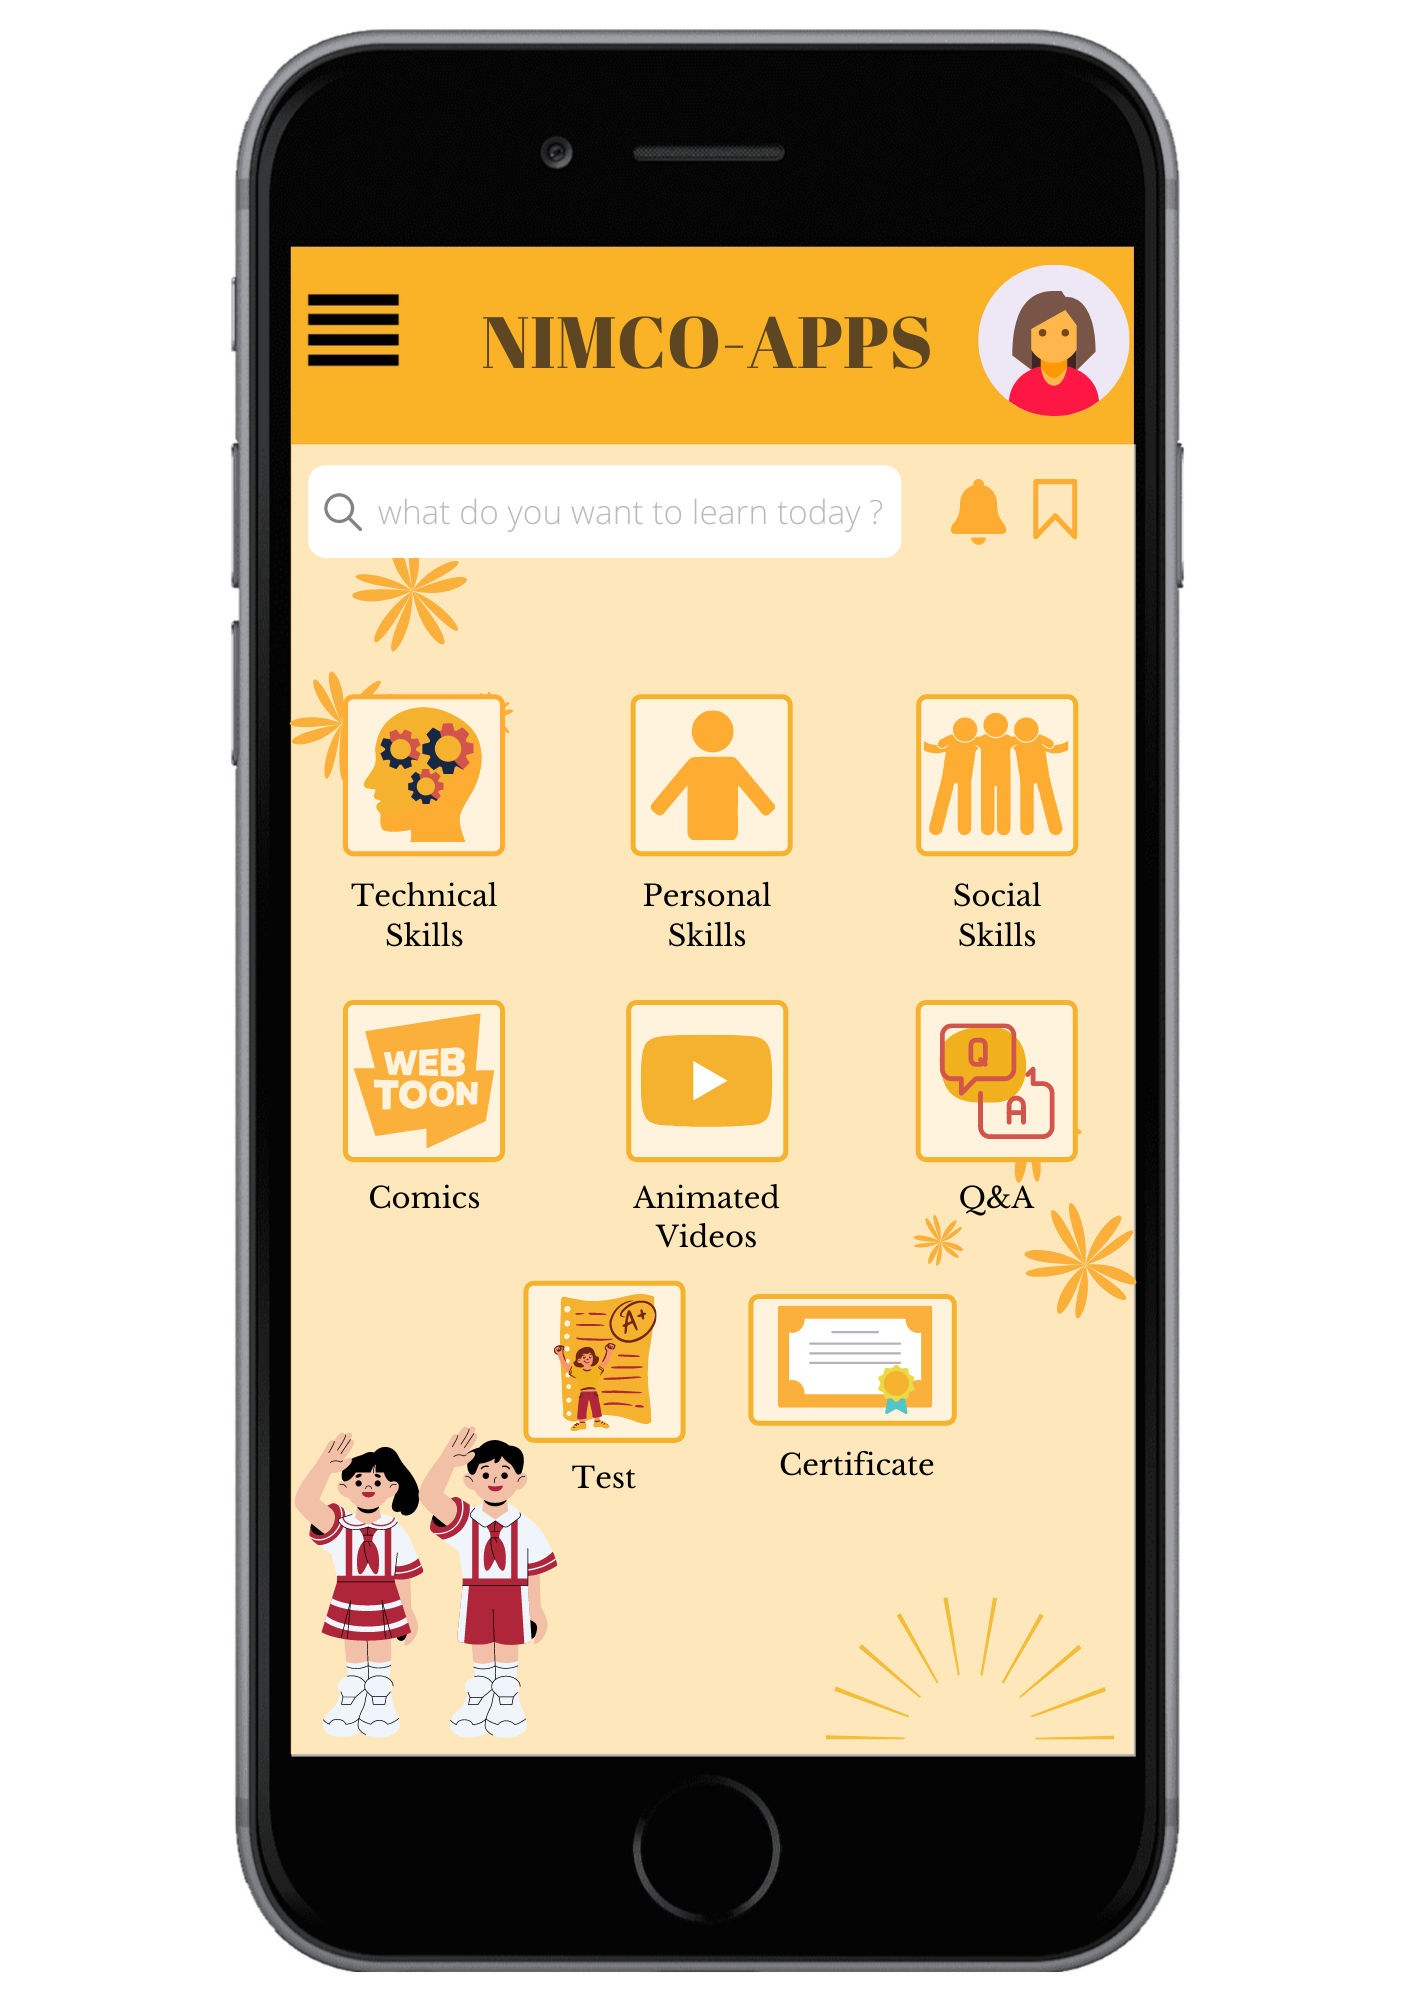 Mahasiswa Fisip UNY Kembangkan Aplikasi Pendidikan Moral Nimco-Apps